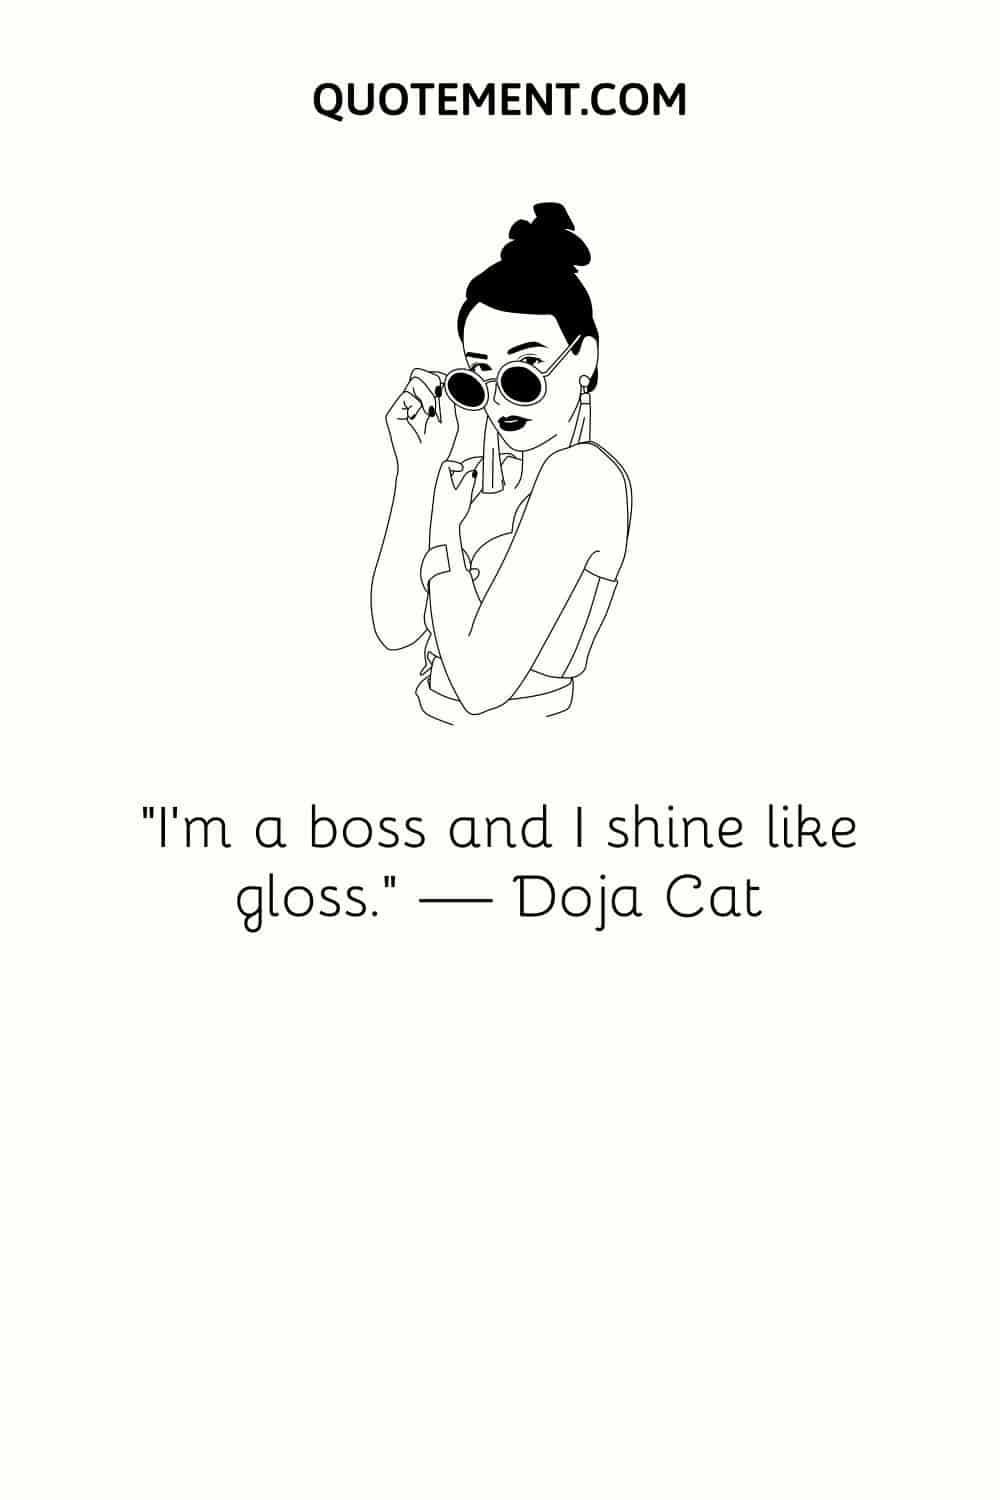 “I’m a boss and I shine like gloss.” — Doja Cat